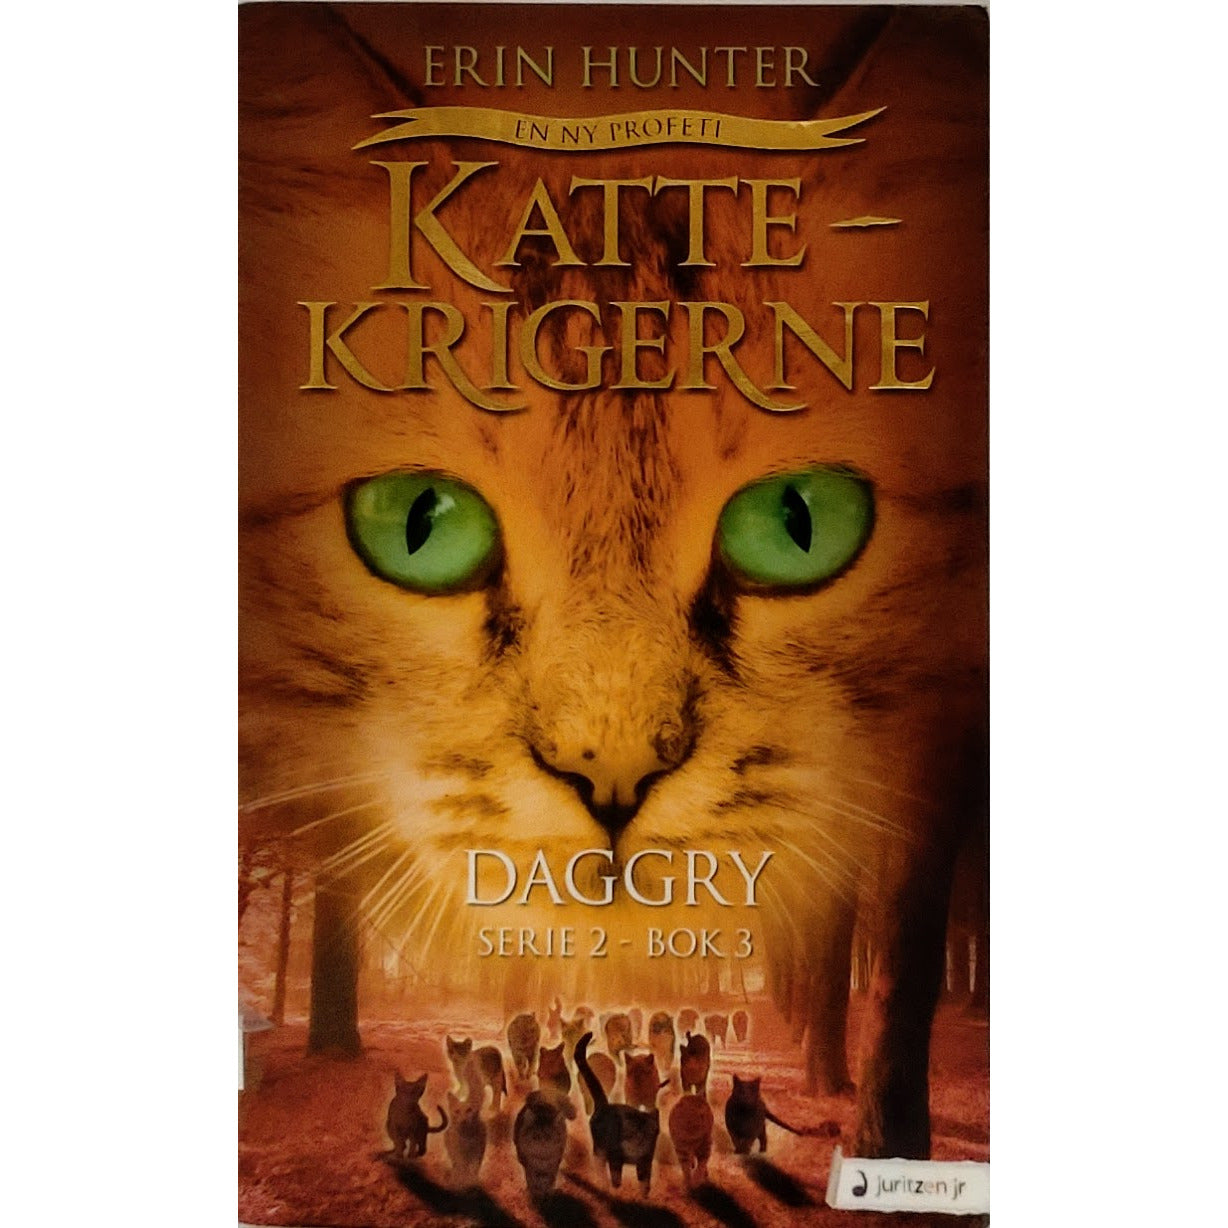 Hunter, Erin: Daggry - Kattekrigerne serie 2 - bok 3